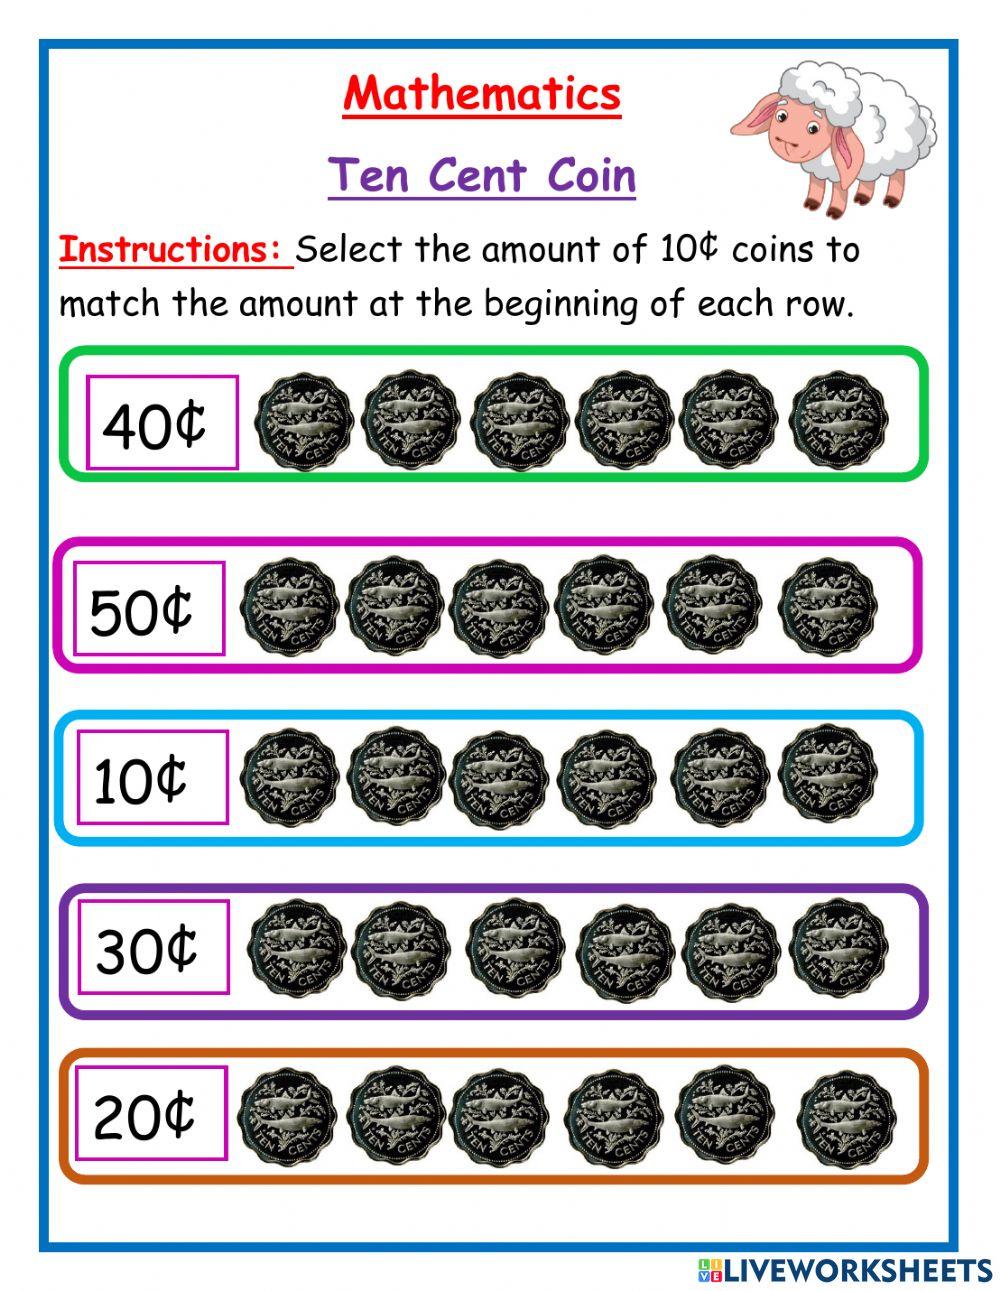 Ten cents coin